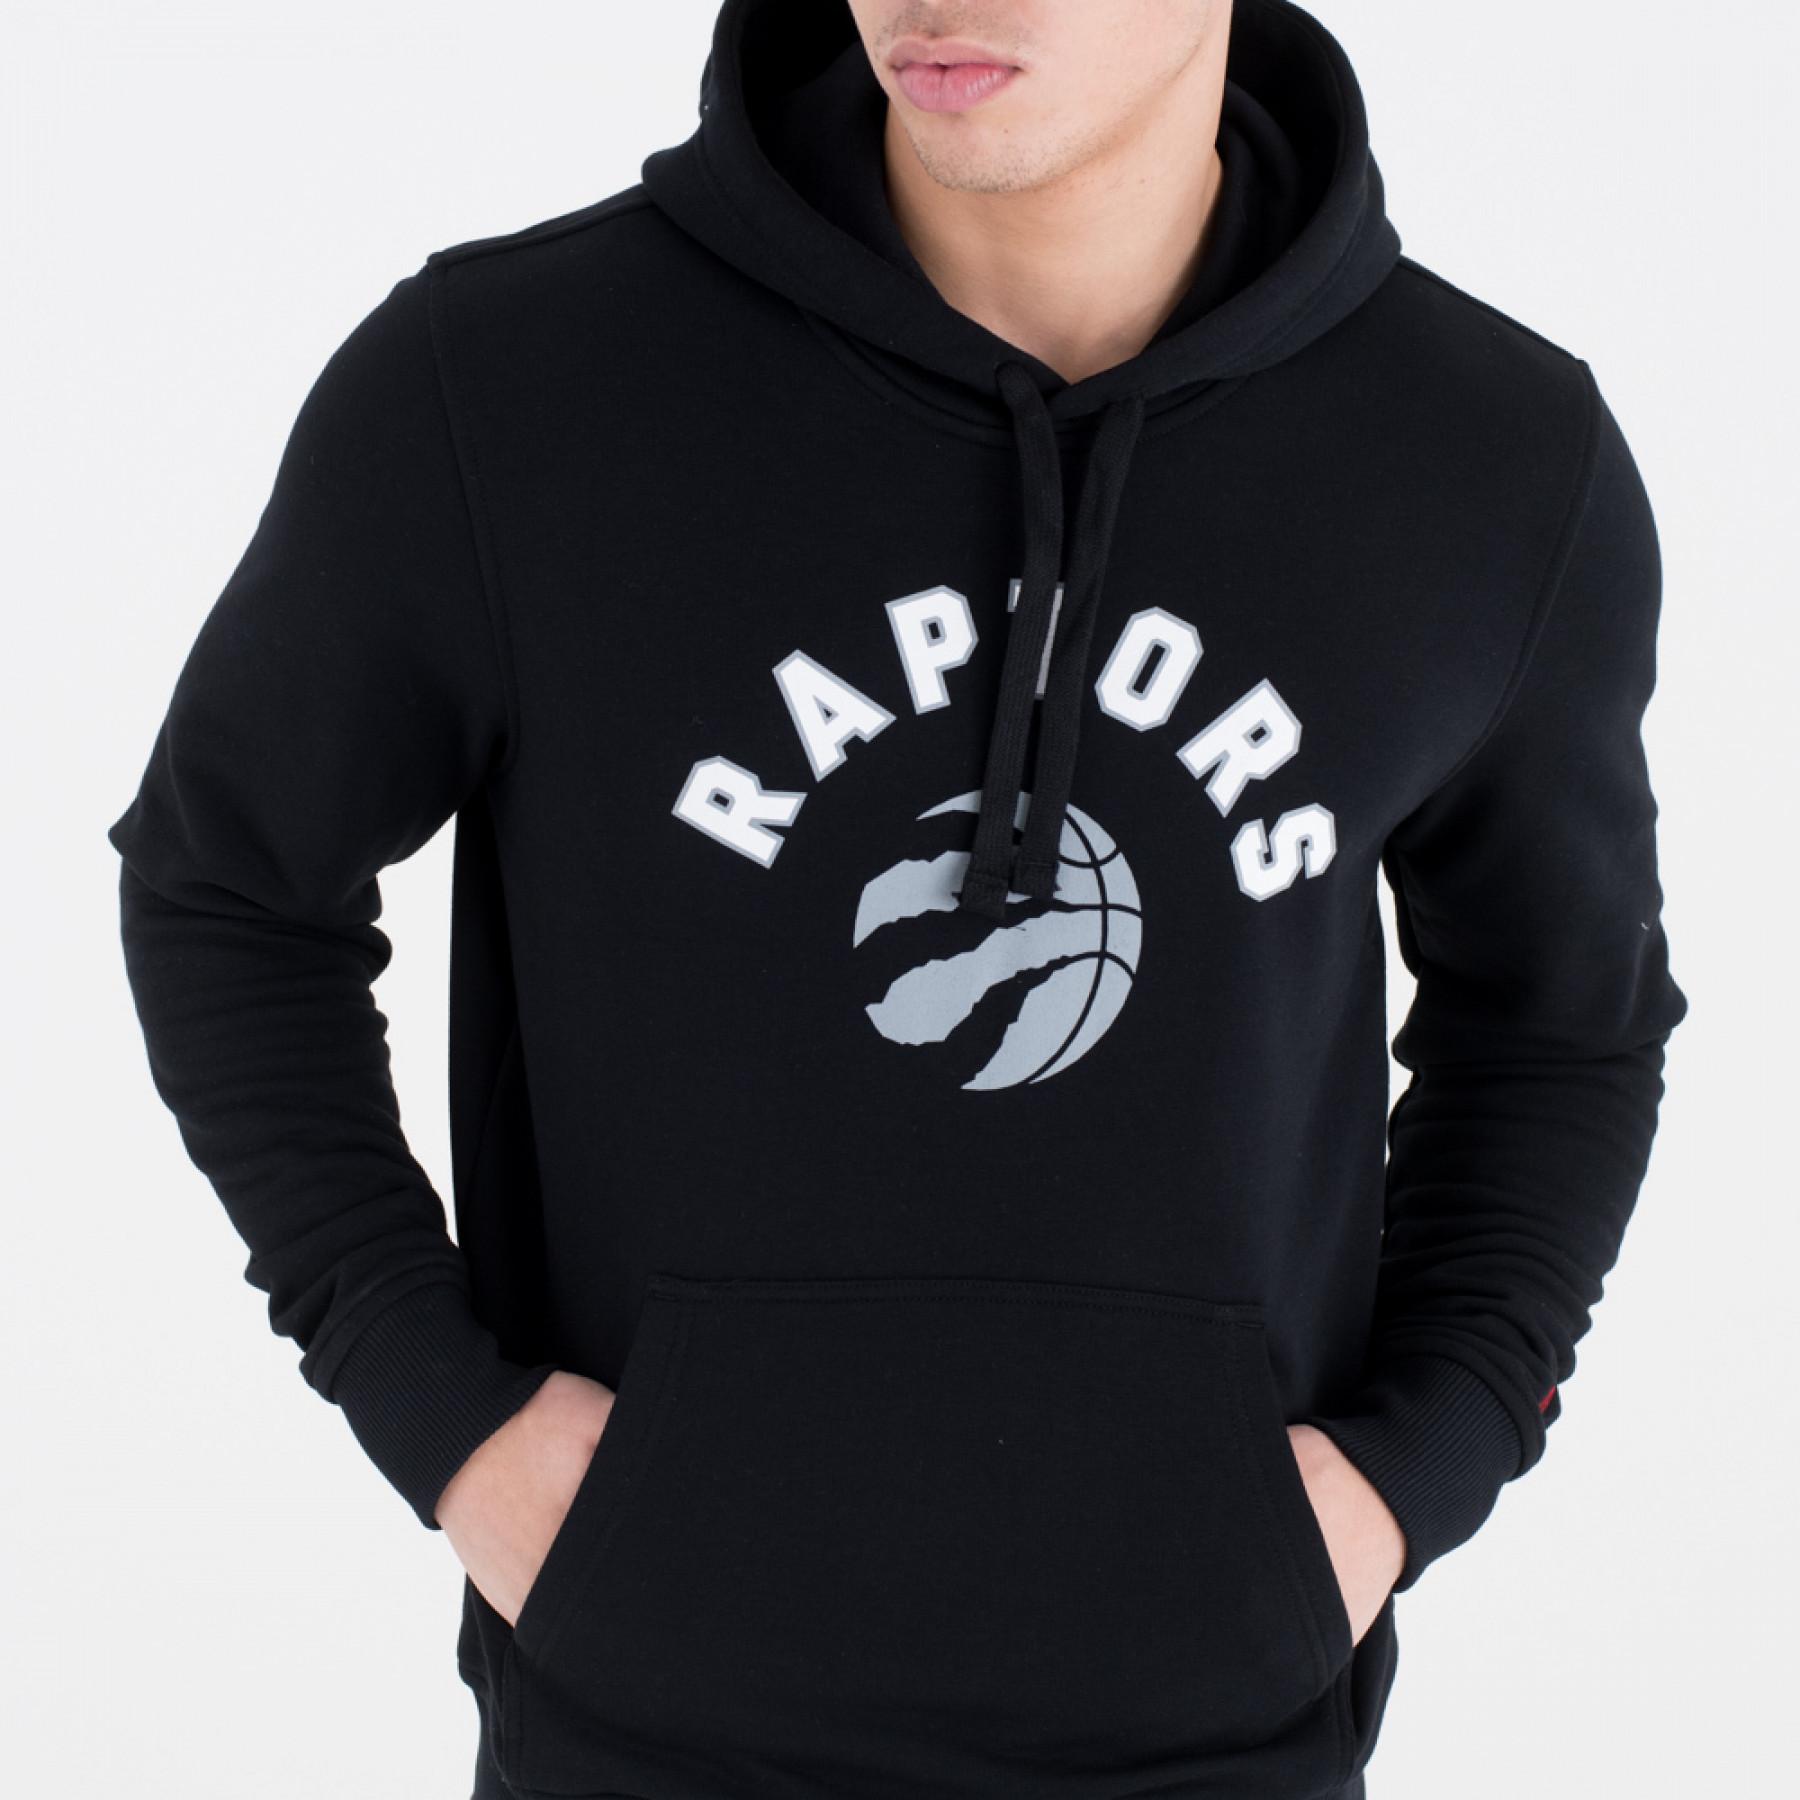 Sweat à capuche New Era avec logo de l'équipe Toronto Raptors